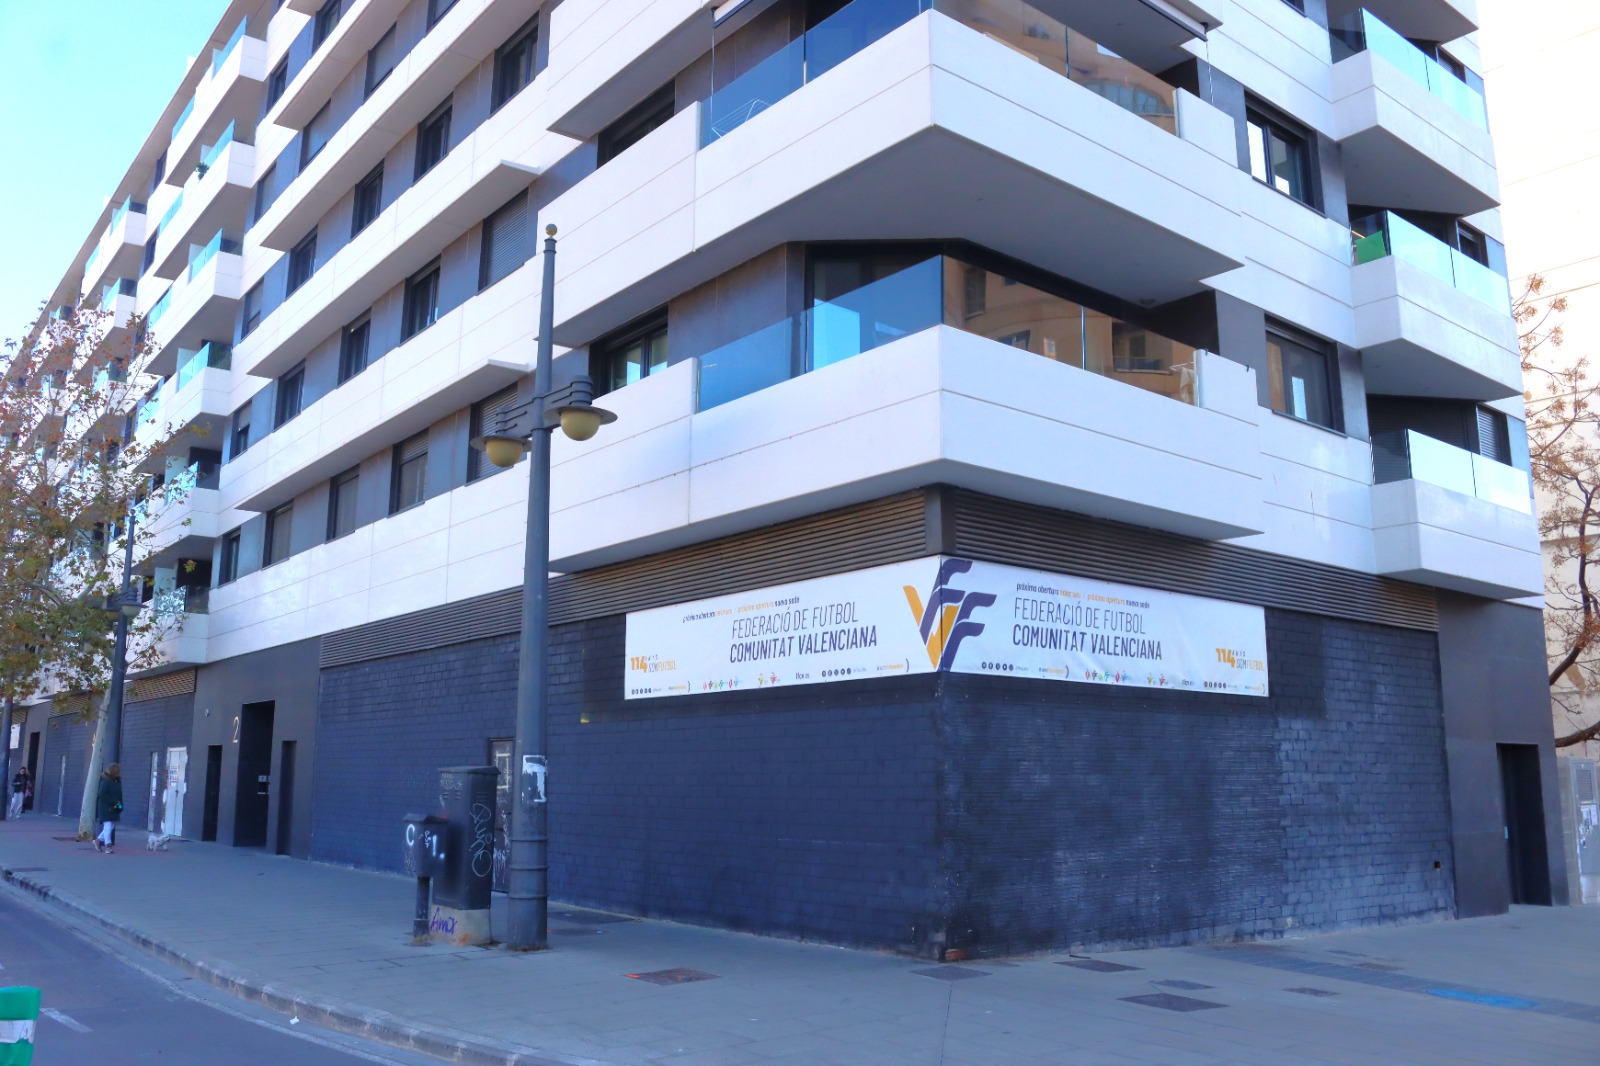 La FFCV comienza las obras de su nueva sede en la ciudad de València